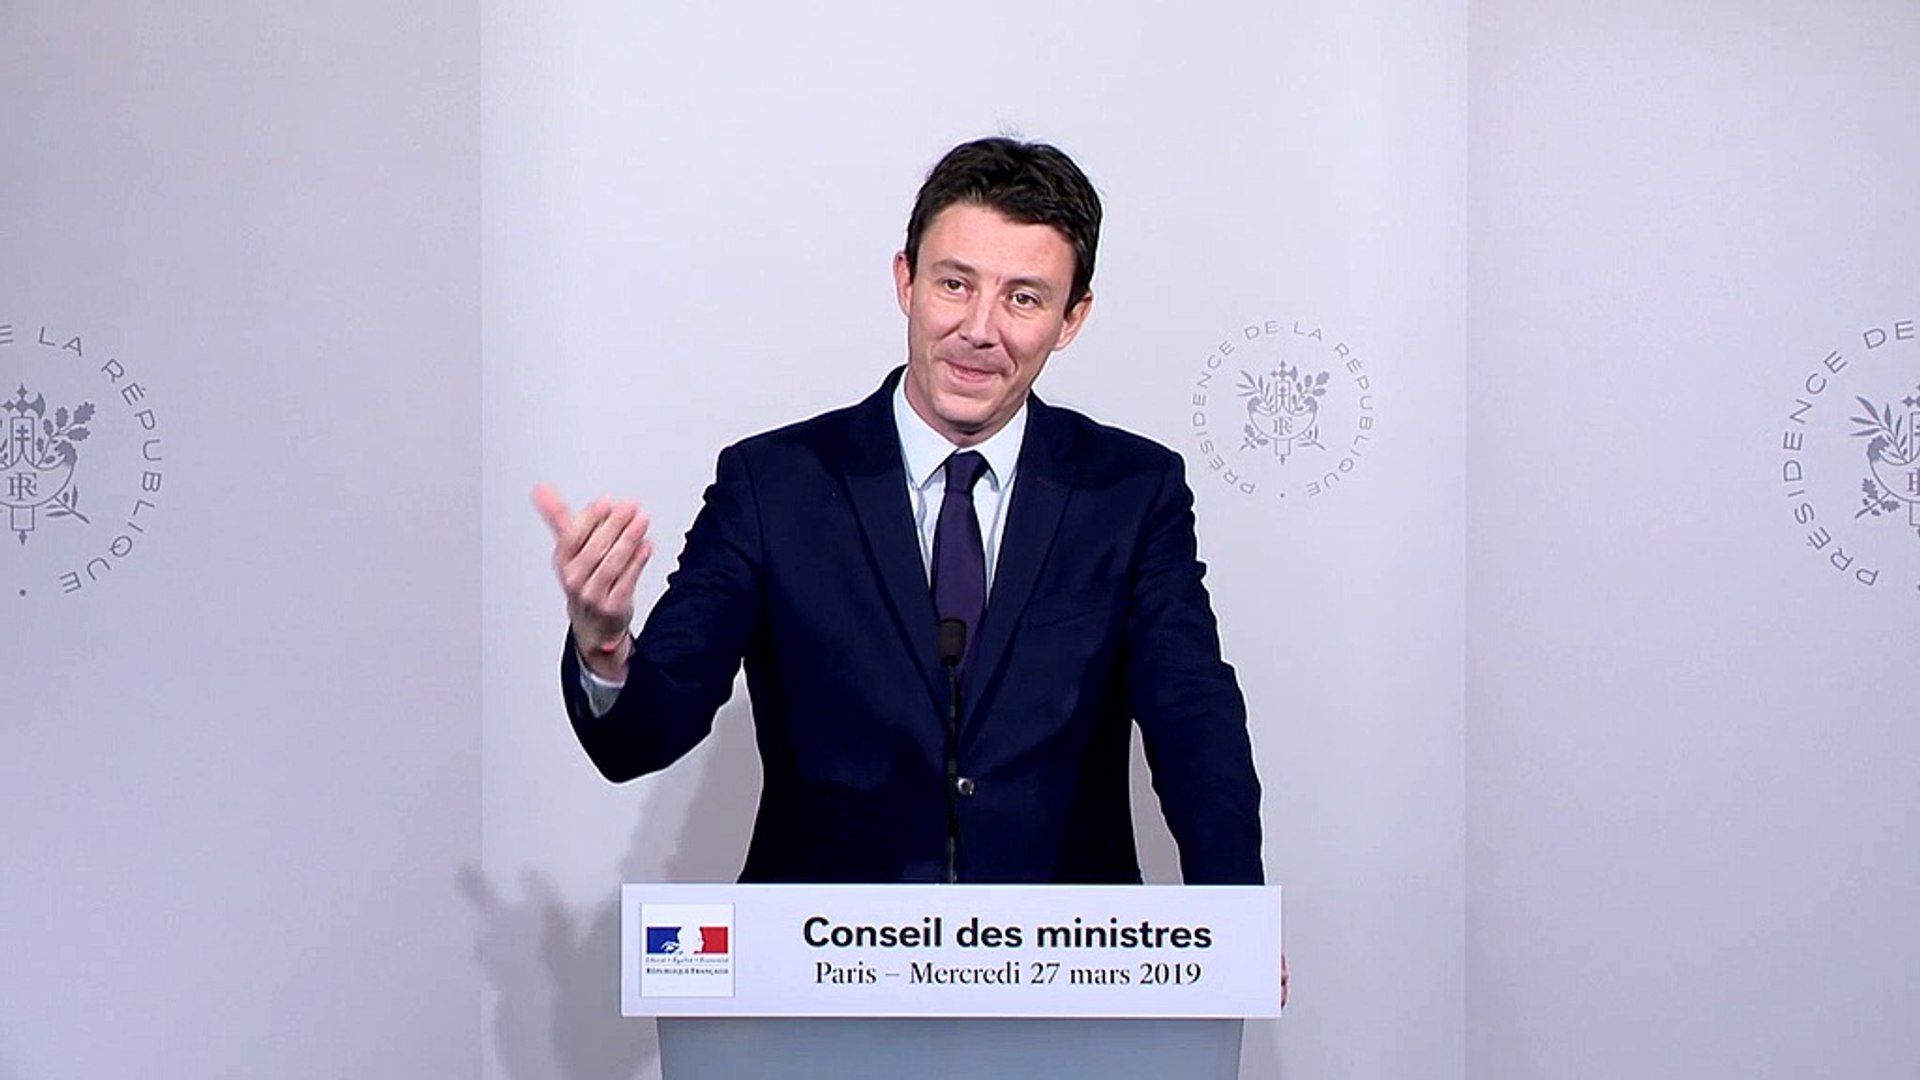 Le porte-parole du gouvernement, Benjamin Griveaux, annoncera "au  printemps" s'il est candidat à la mairie de Paris - Vidéo Dailymotion